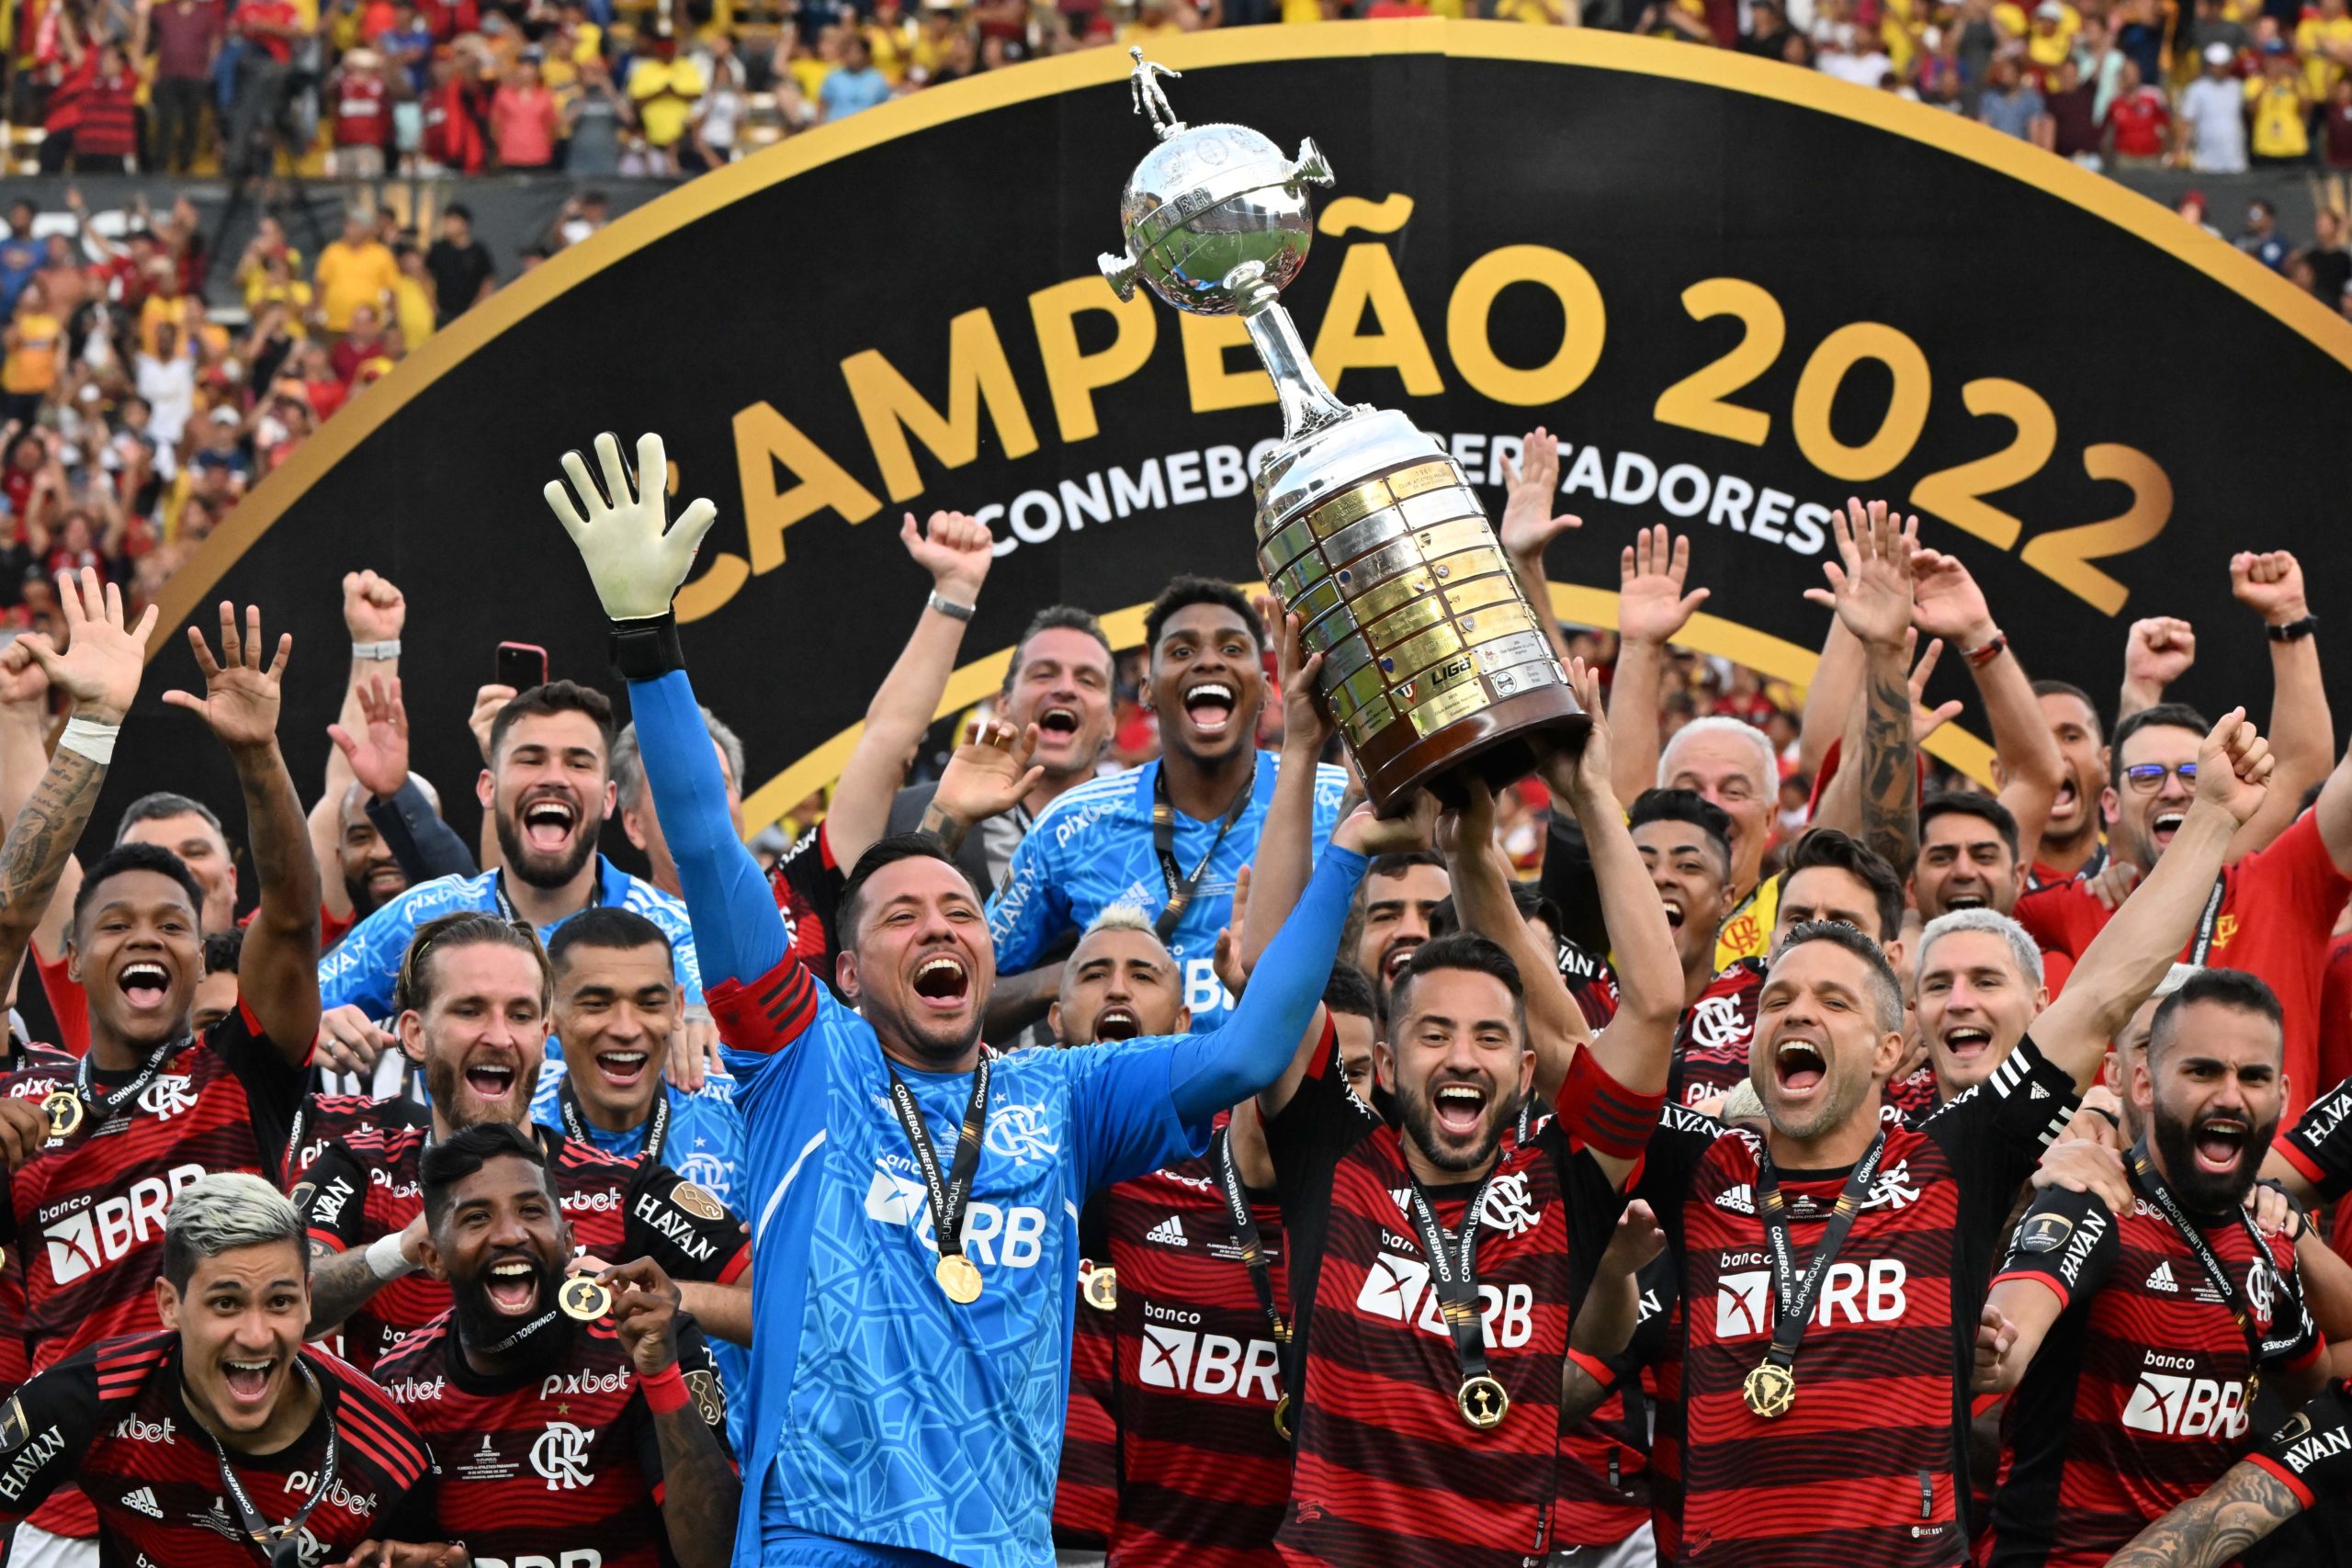 CONMEBOL Libertadores - 😍🏆 Volta, #Libertadores! 🥇🥈 Todas as 6⃣0⃣ finais  da história! Quem serão os próximos 2⃣ finalistas a disputar a  #GloriaEterna?